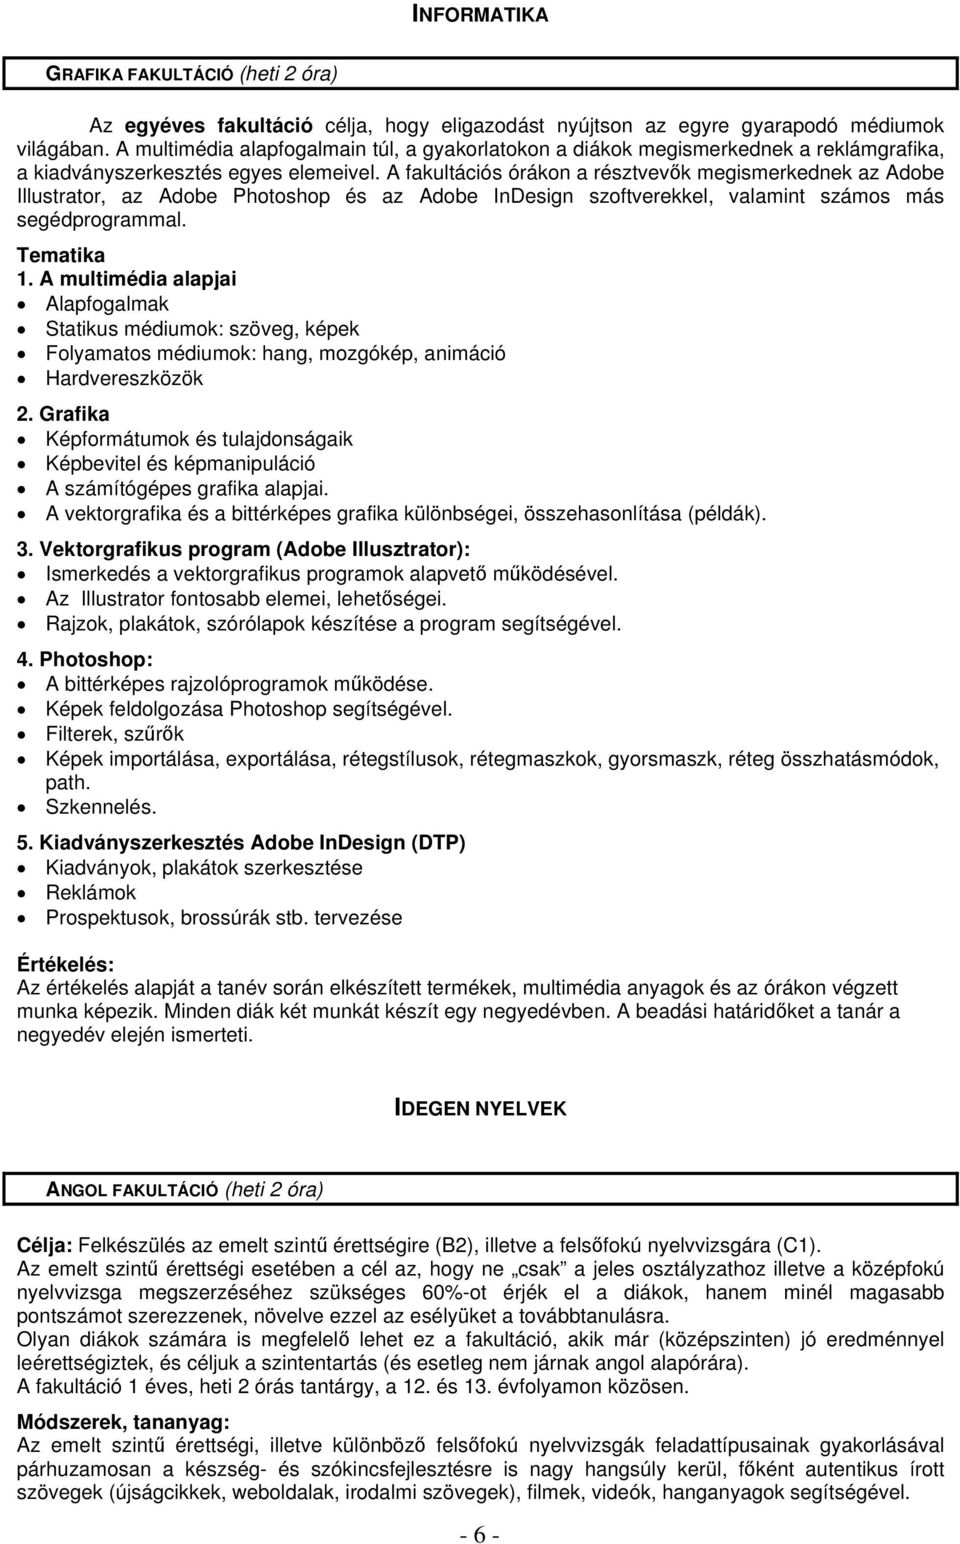 VÁLASZTHATÓ FOGLALKOZÁSOK TAGOZATOK - FAKULTÁCIÓK 2012/ évfolyam Fibonacci  / Hoppá / ZOÉ - PDF Free Download